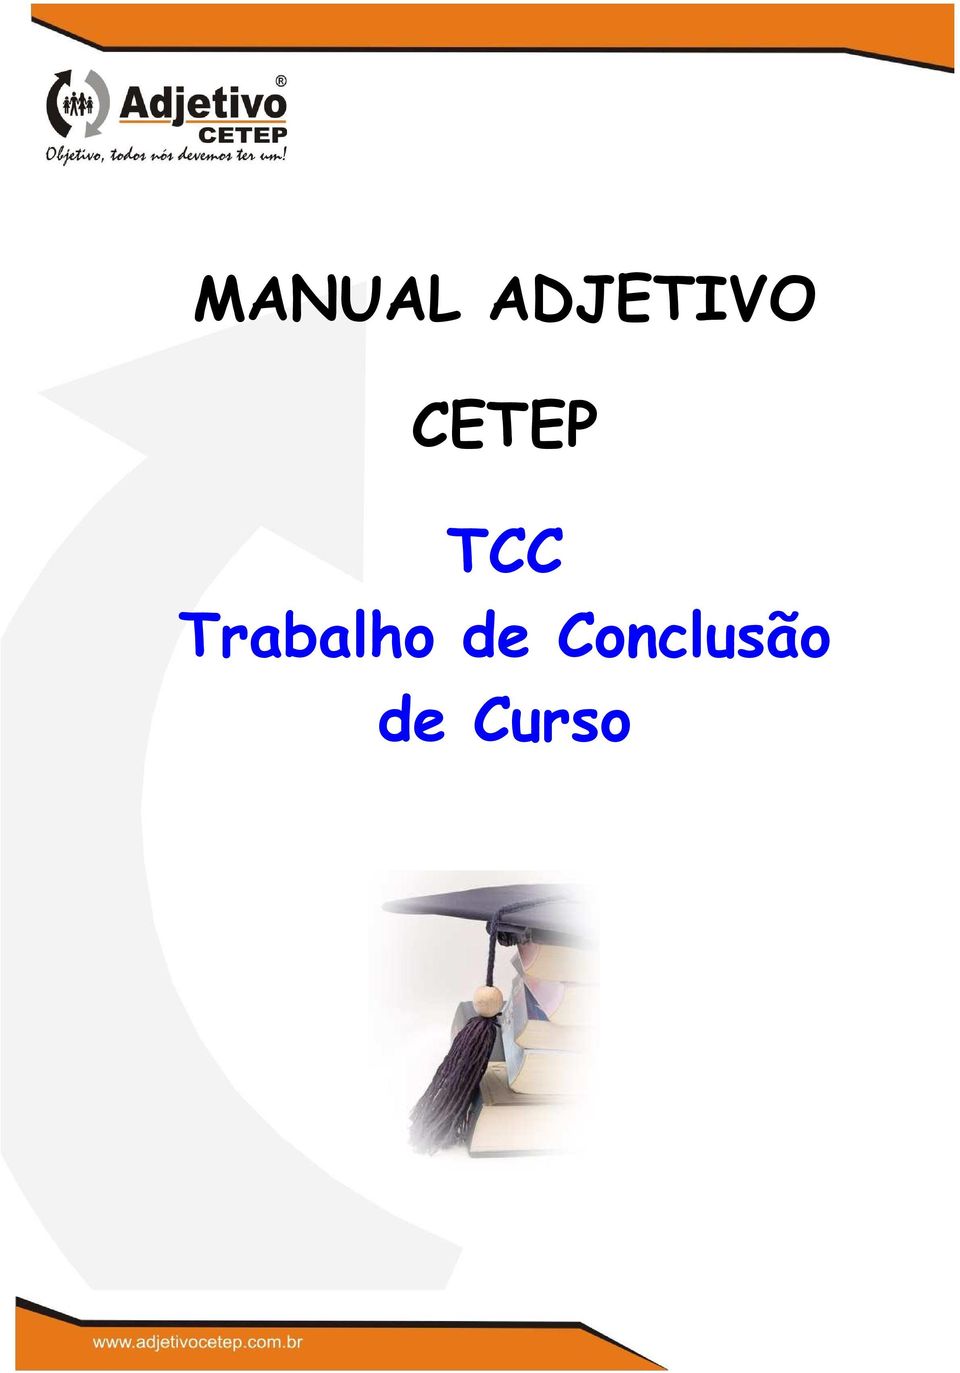 CETEP TCC